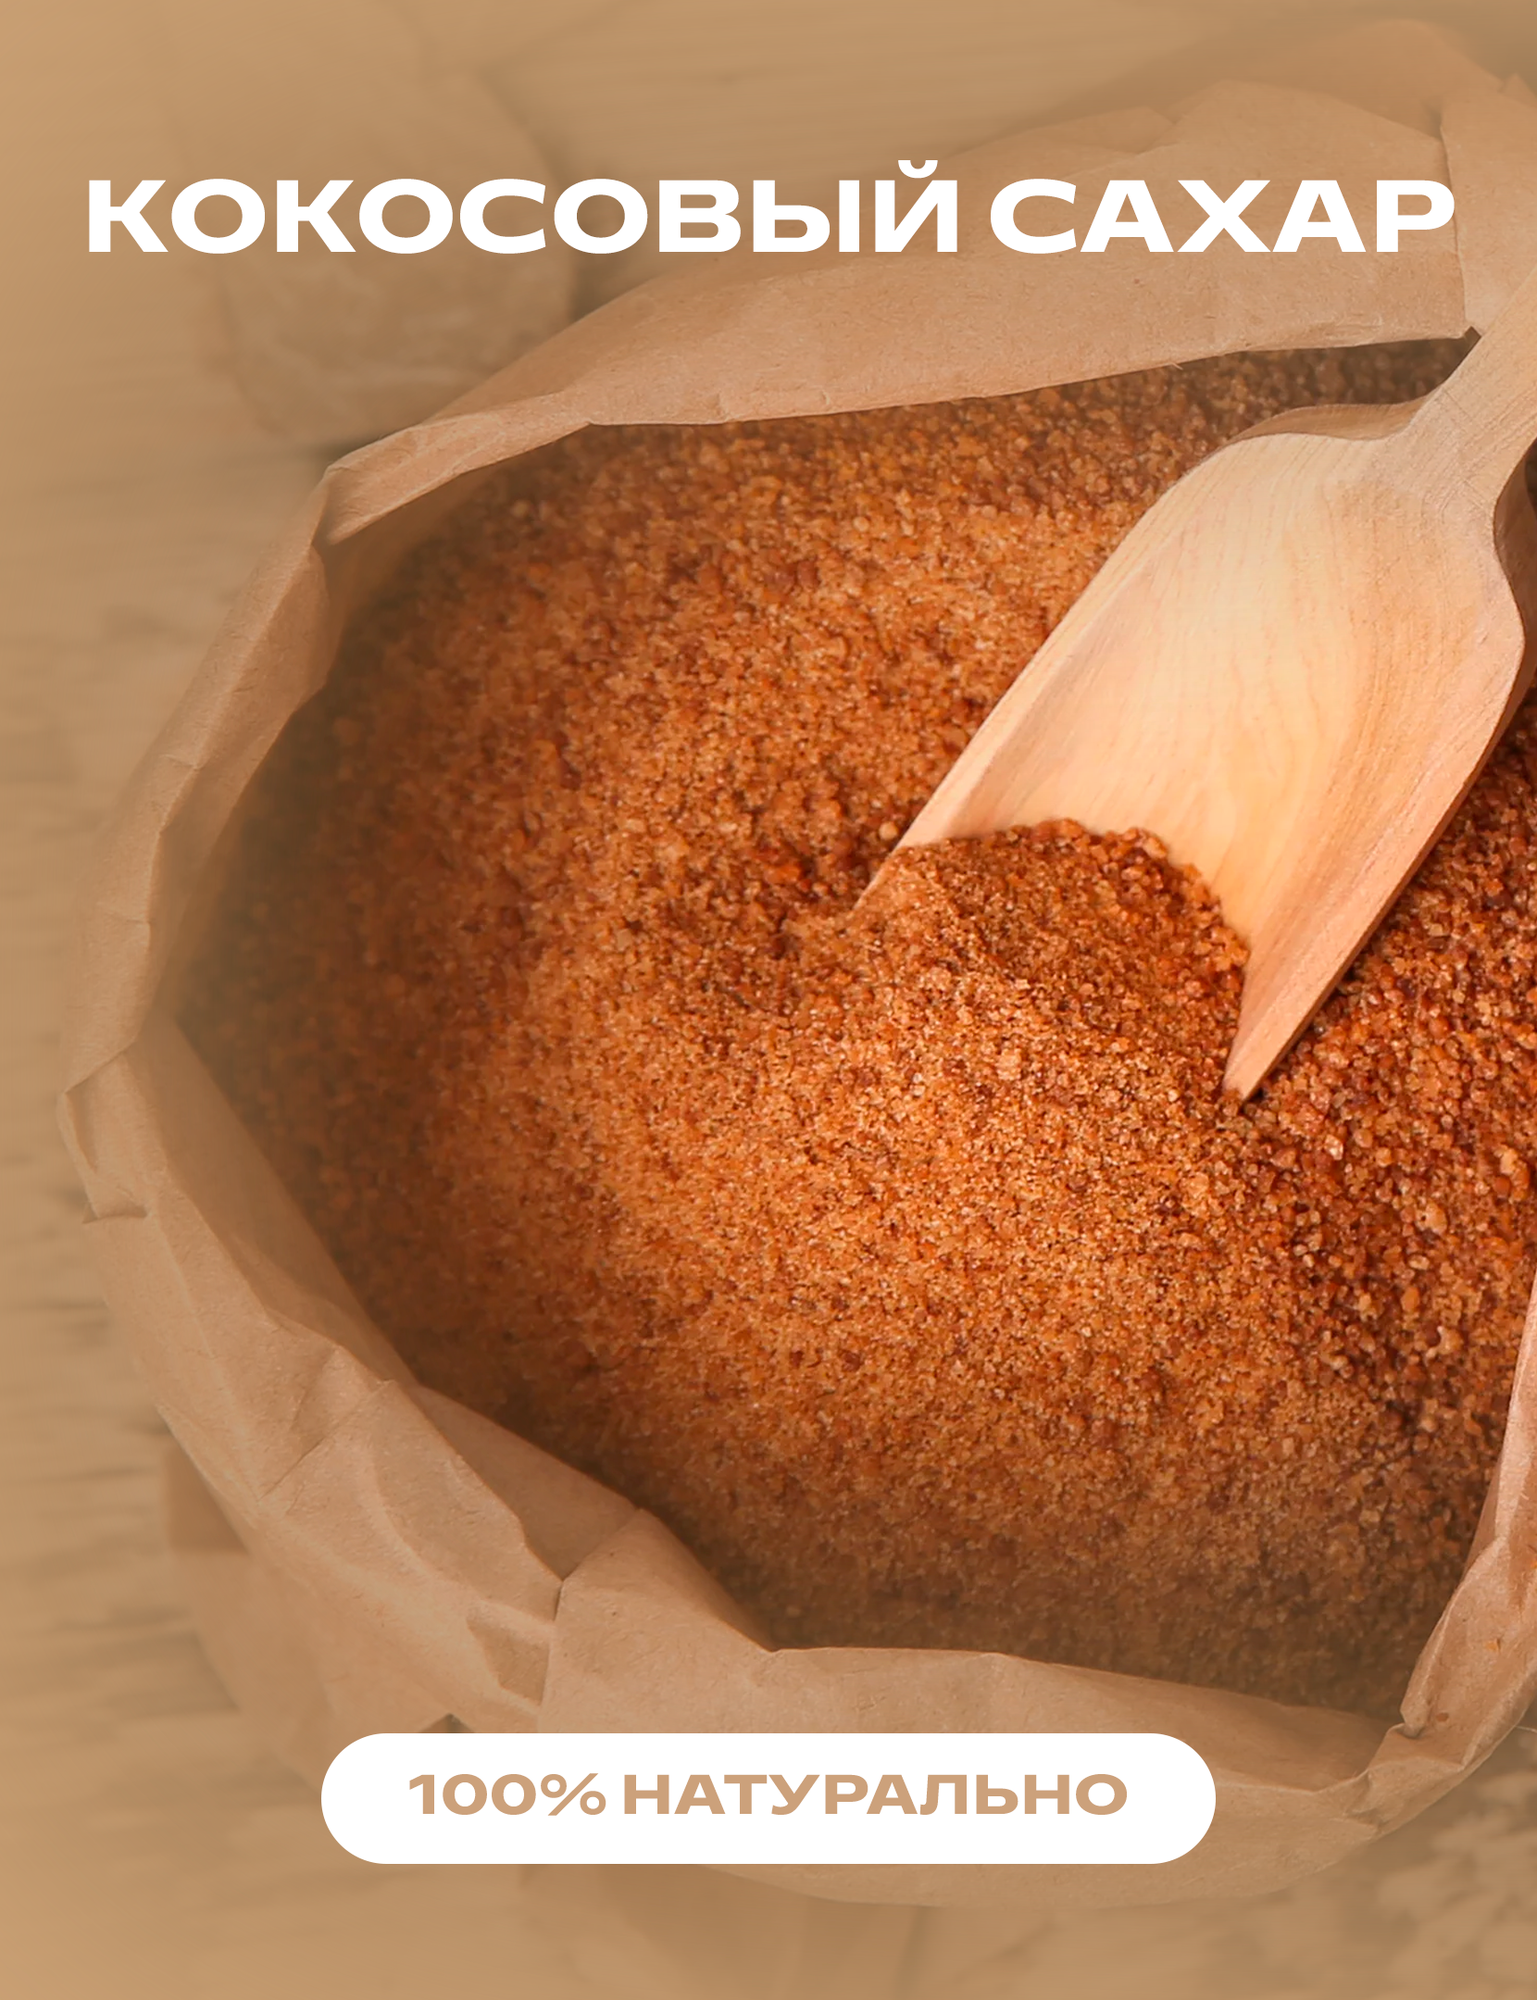 Кокосовый сахар натуральный, 0,25 кг